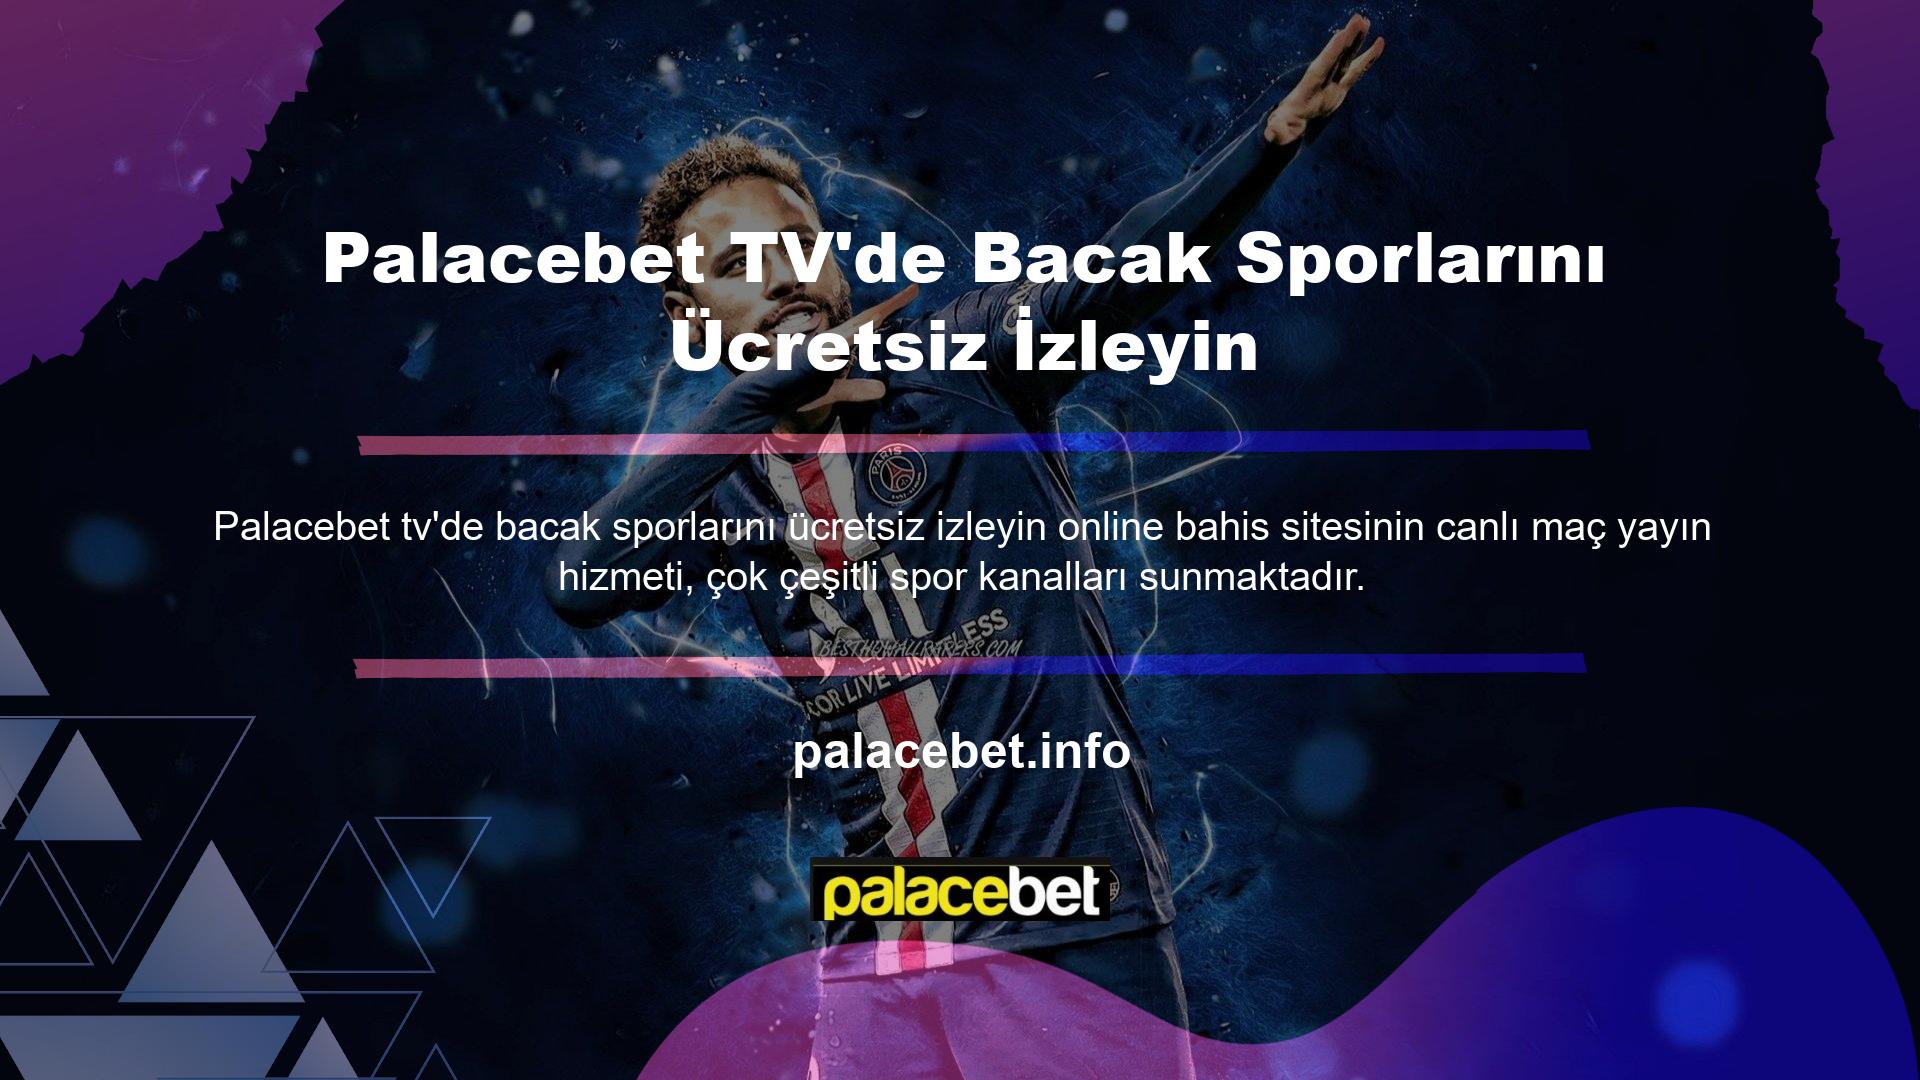 Örneğin Türkiye Süper Ligi maçlarını yayınlayan Beinsport kanalını ücretsiz olarak izleyebilirsiniz